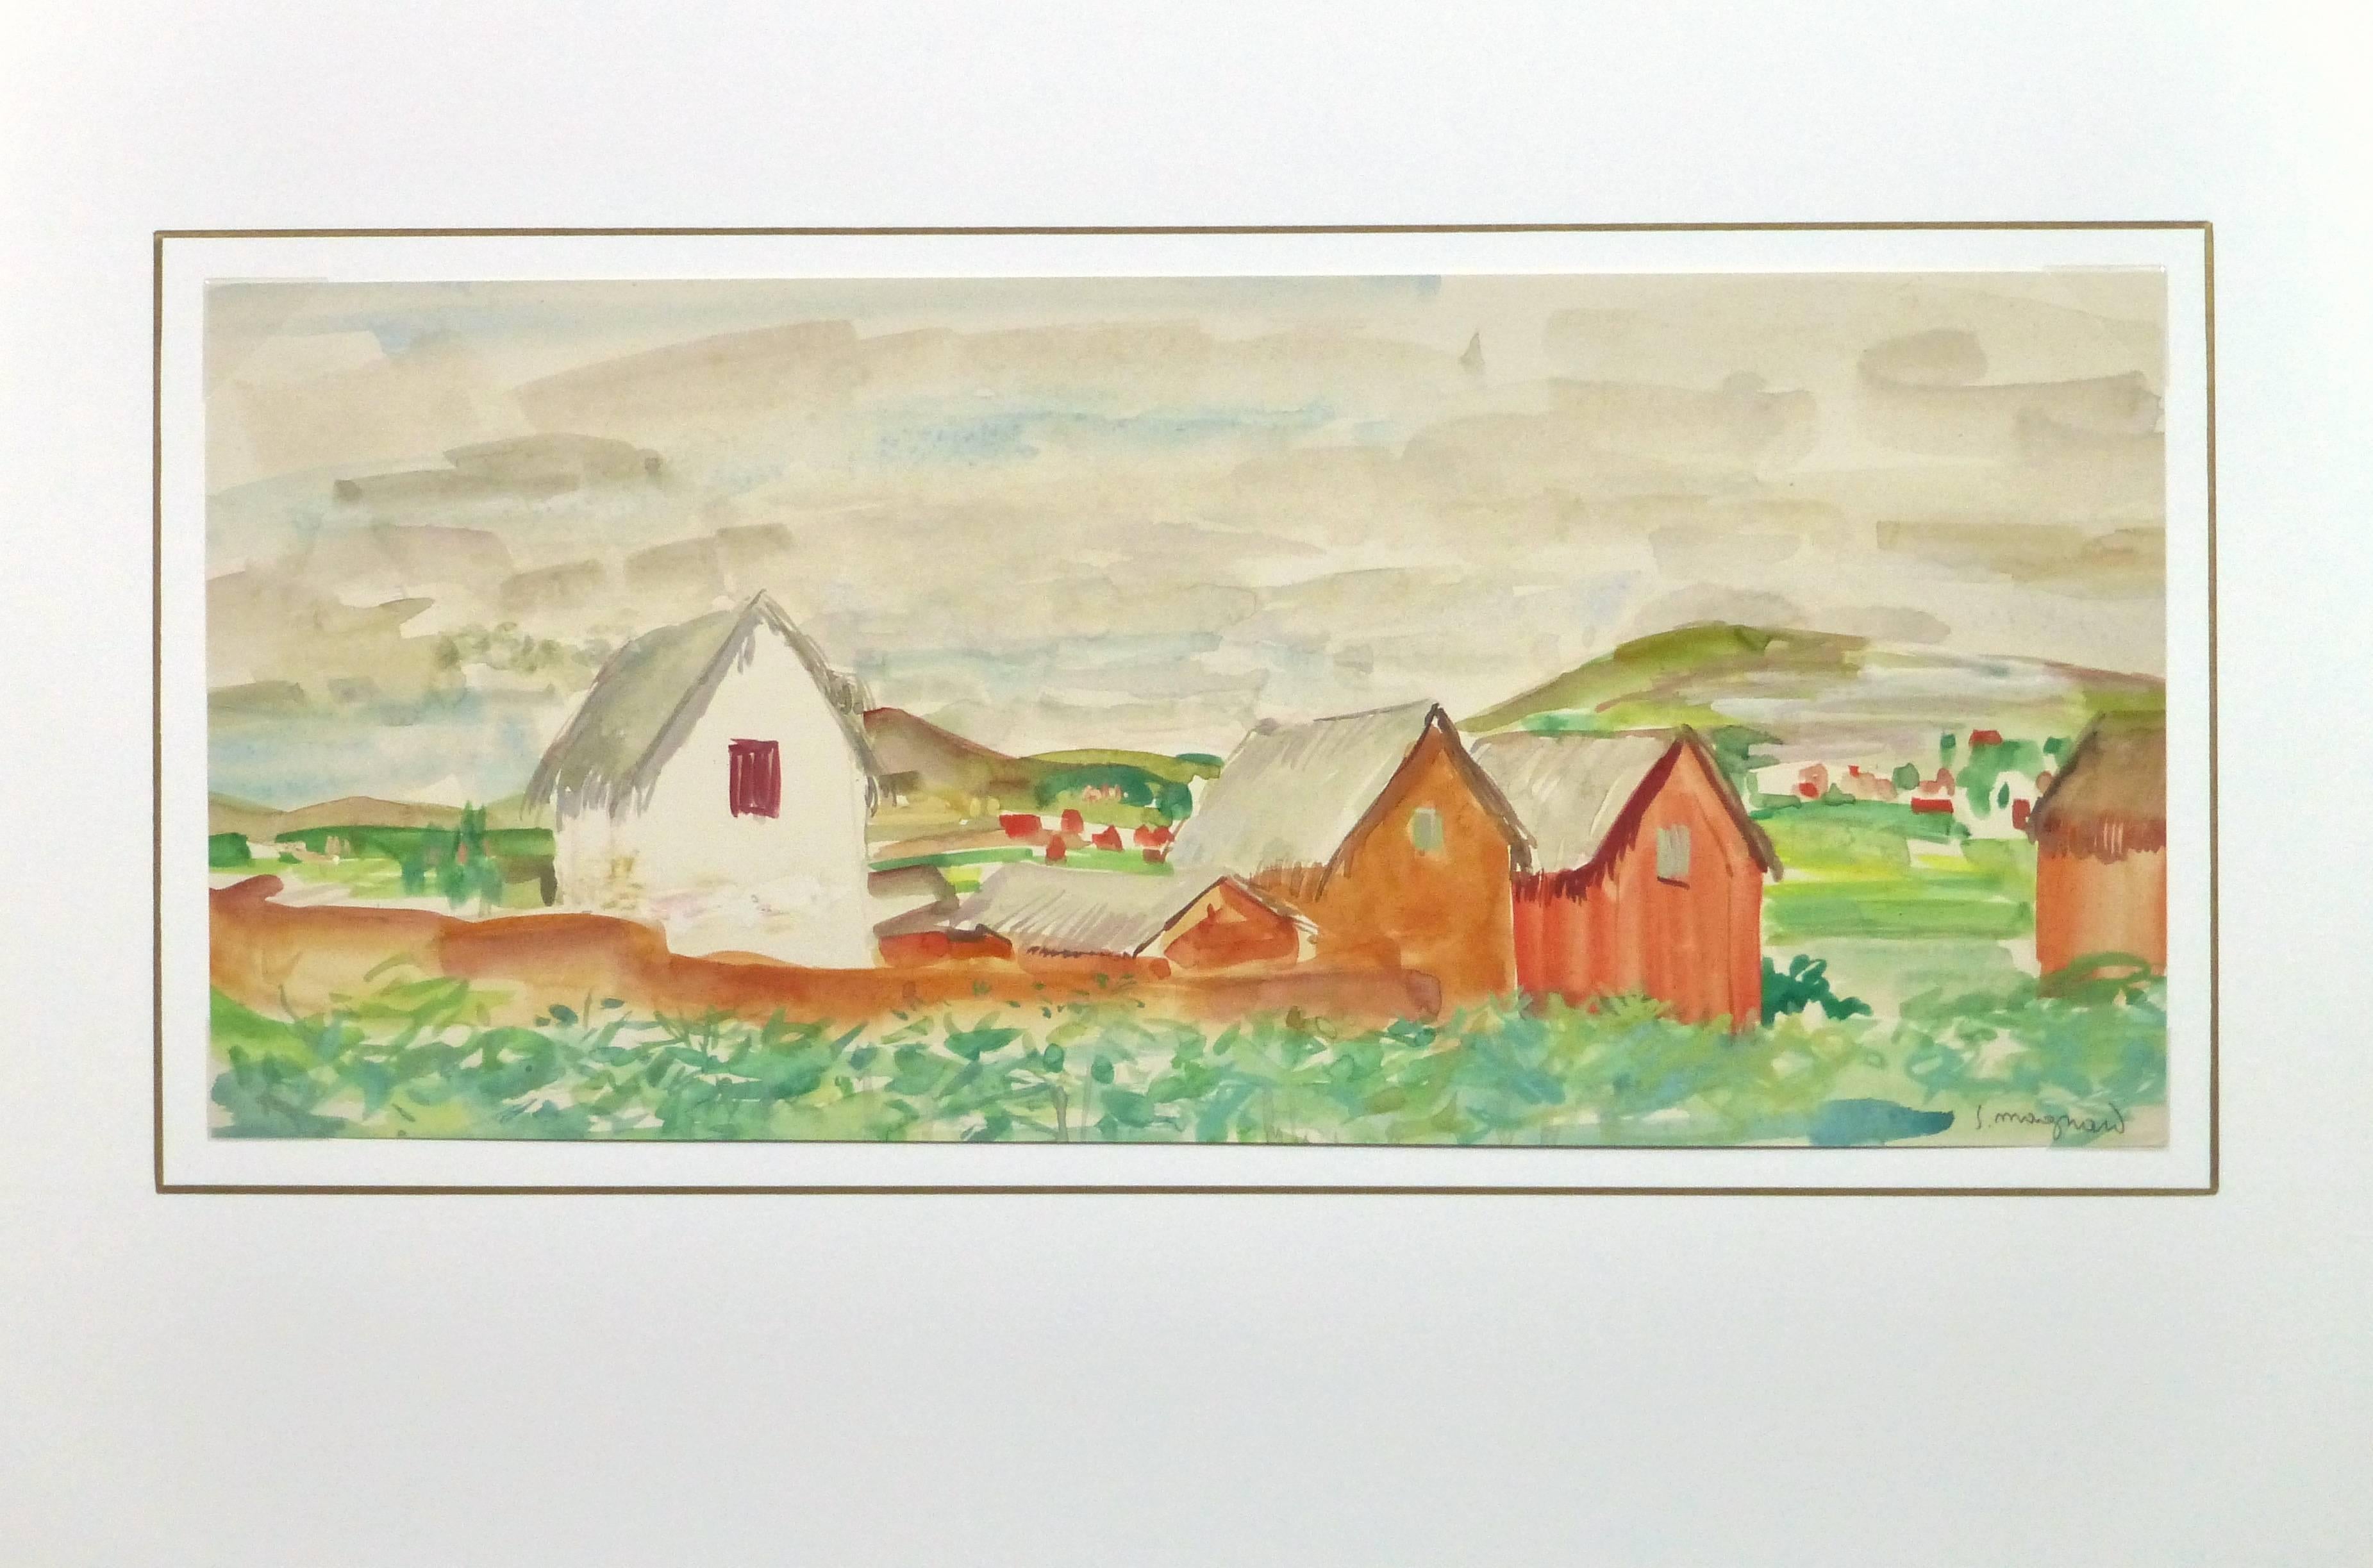 Vintage French Watercolor Landscape - Rural Outskirts - Beige Landscape Art by Stephane Magnard